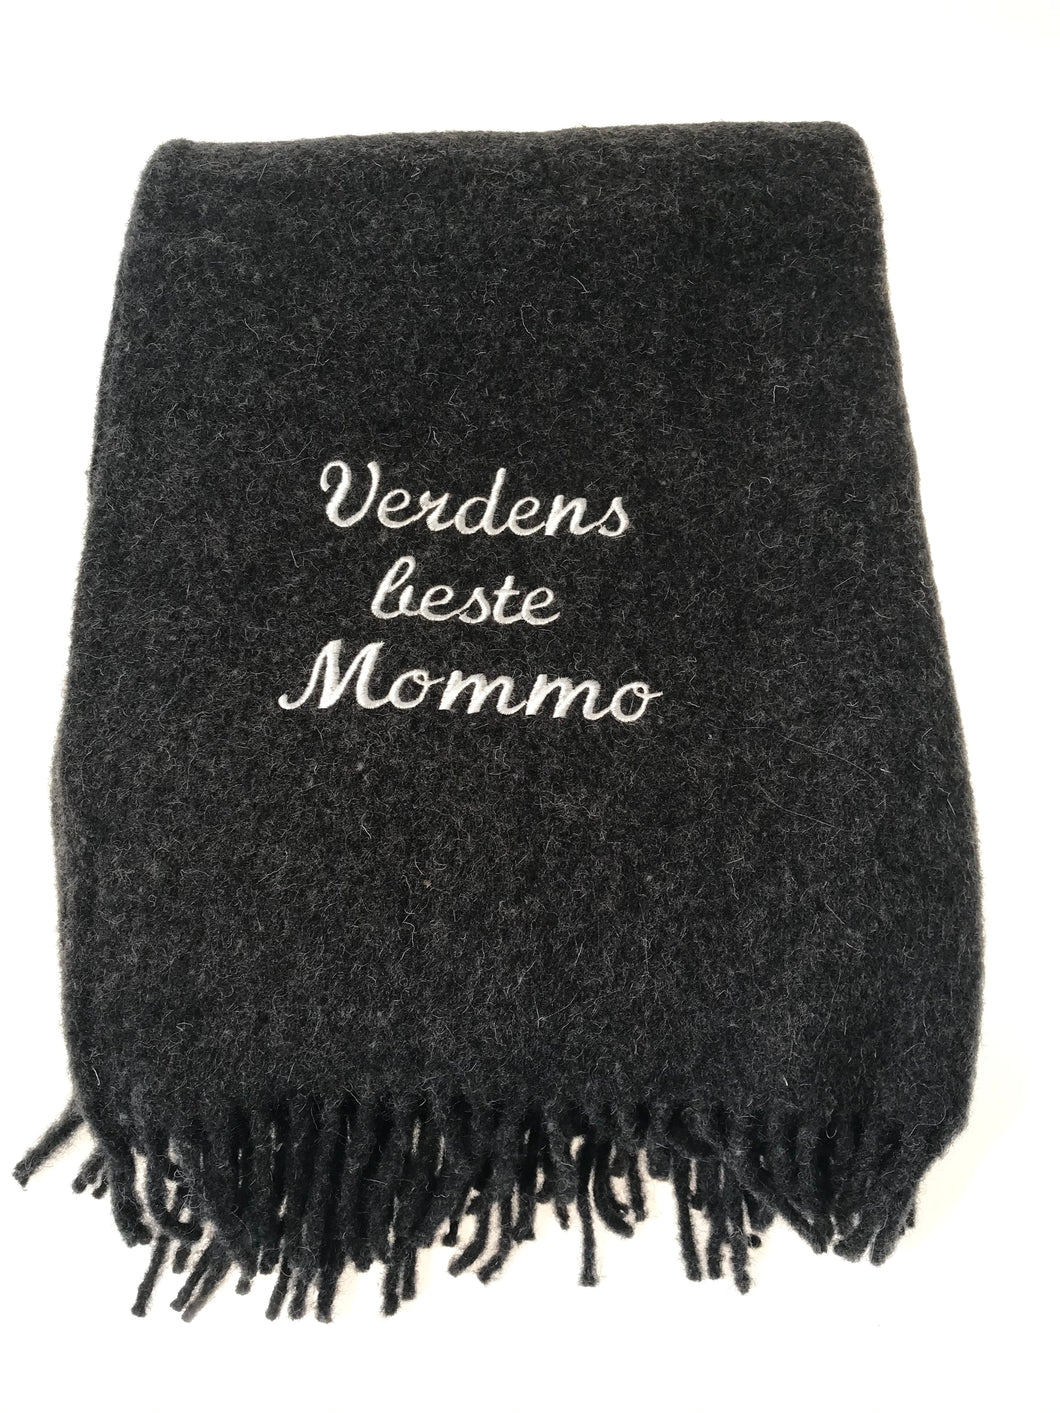 Ullpledd til Mommo, Verdens beste Mommo brodert på ullpledd 130x170 cm